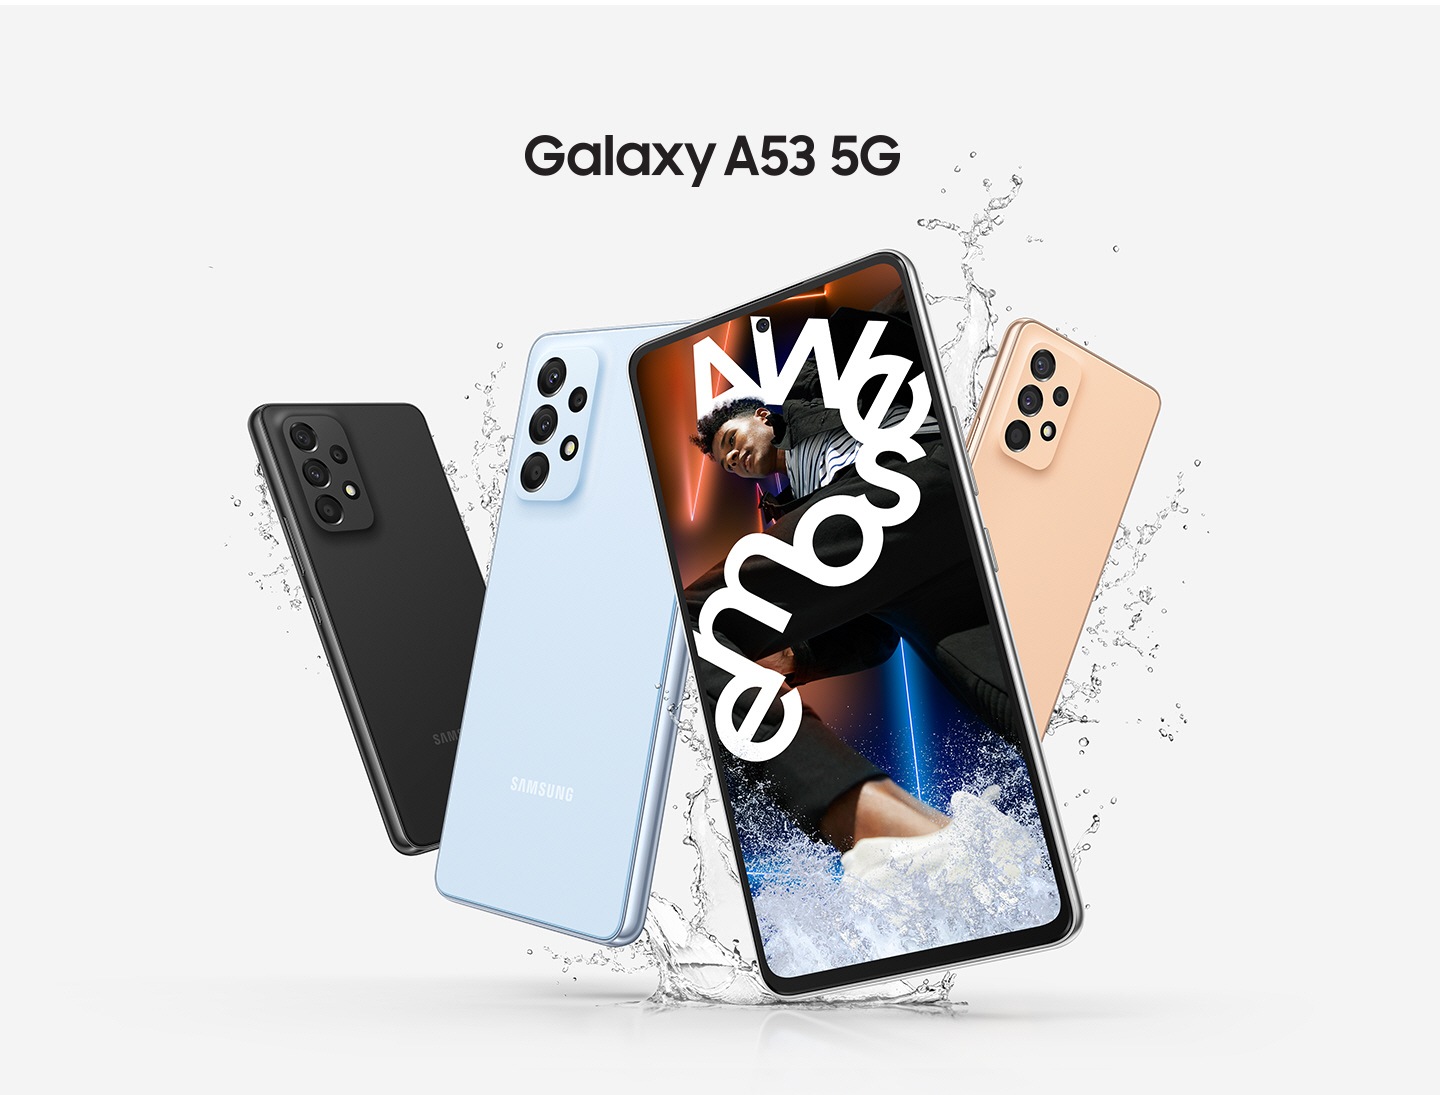 Se muestran cuatro dispositivos Galaxy A53 5G. Tres de ellos se exhiben desde la parte posterior para mostrar las opciones de colores Negro asombroso, Azul asombroso y Durazno asombroso. El Galaxy A53 5G que mira desde el frente muestra una imagen vívida de un hombre rodeado por un texto blanco que dice “Awesome” (Asombroso).